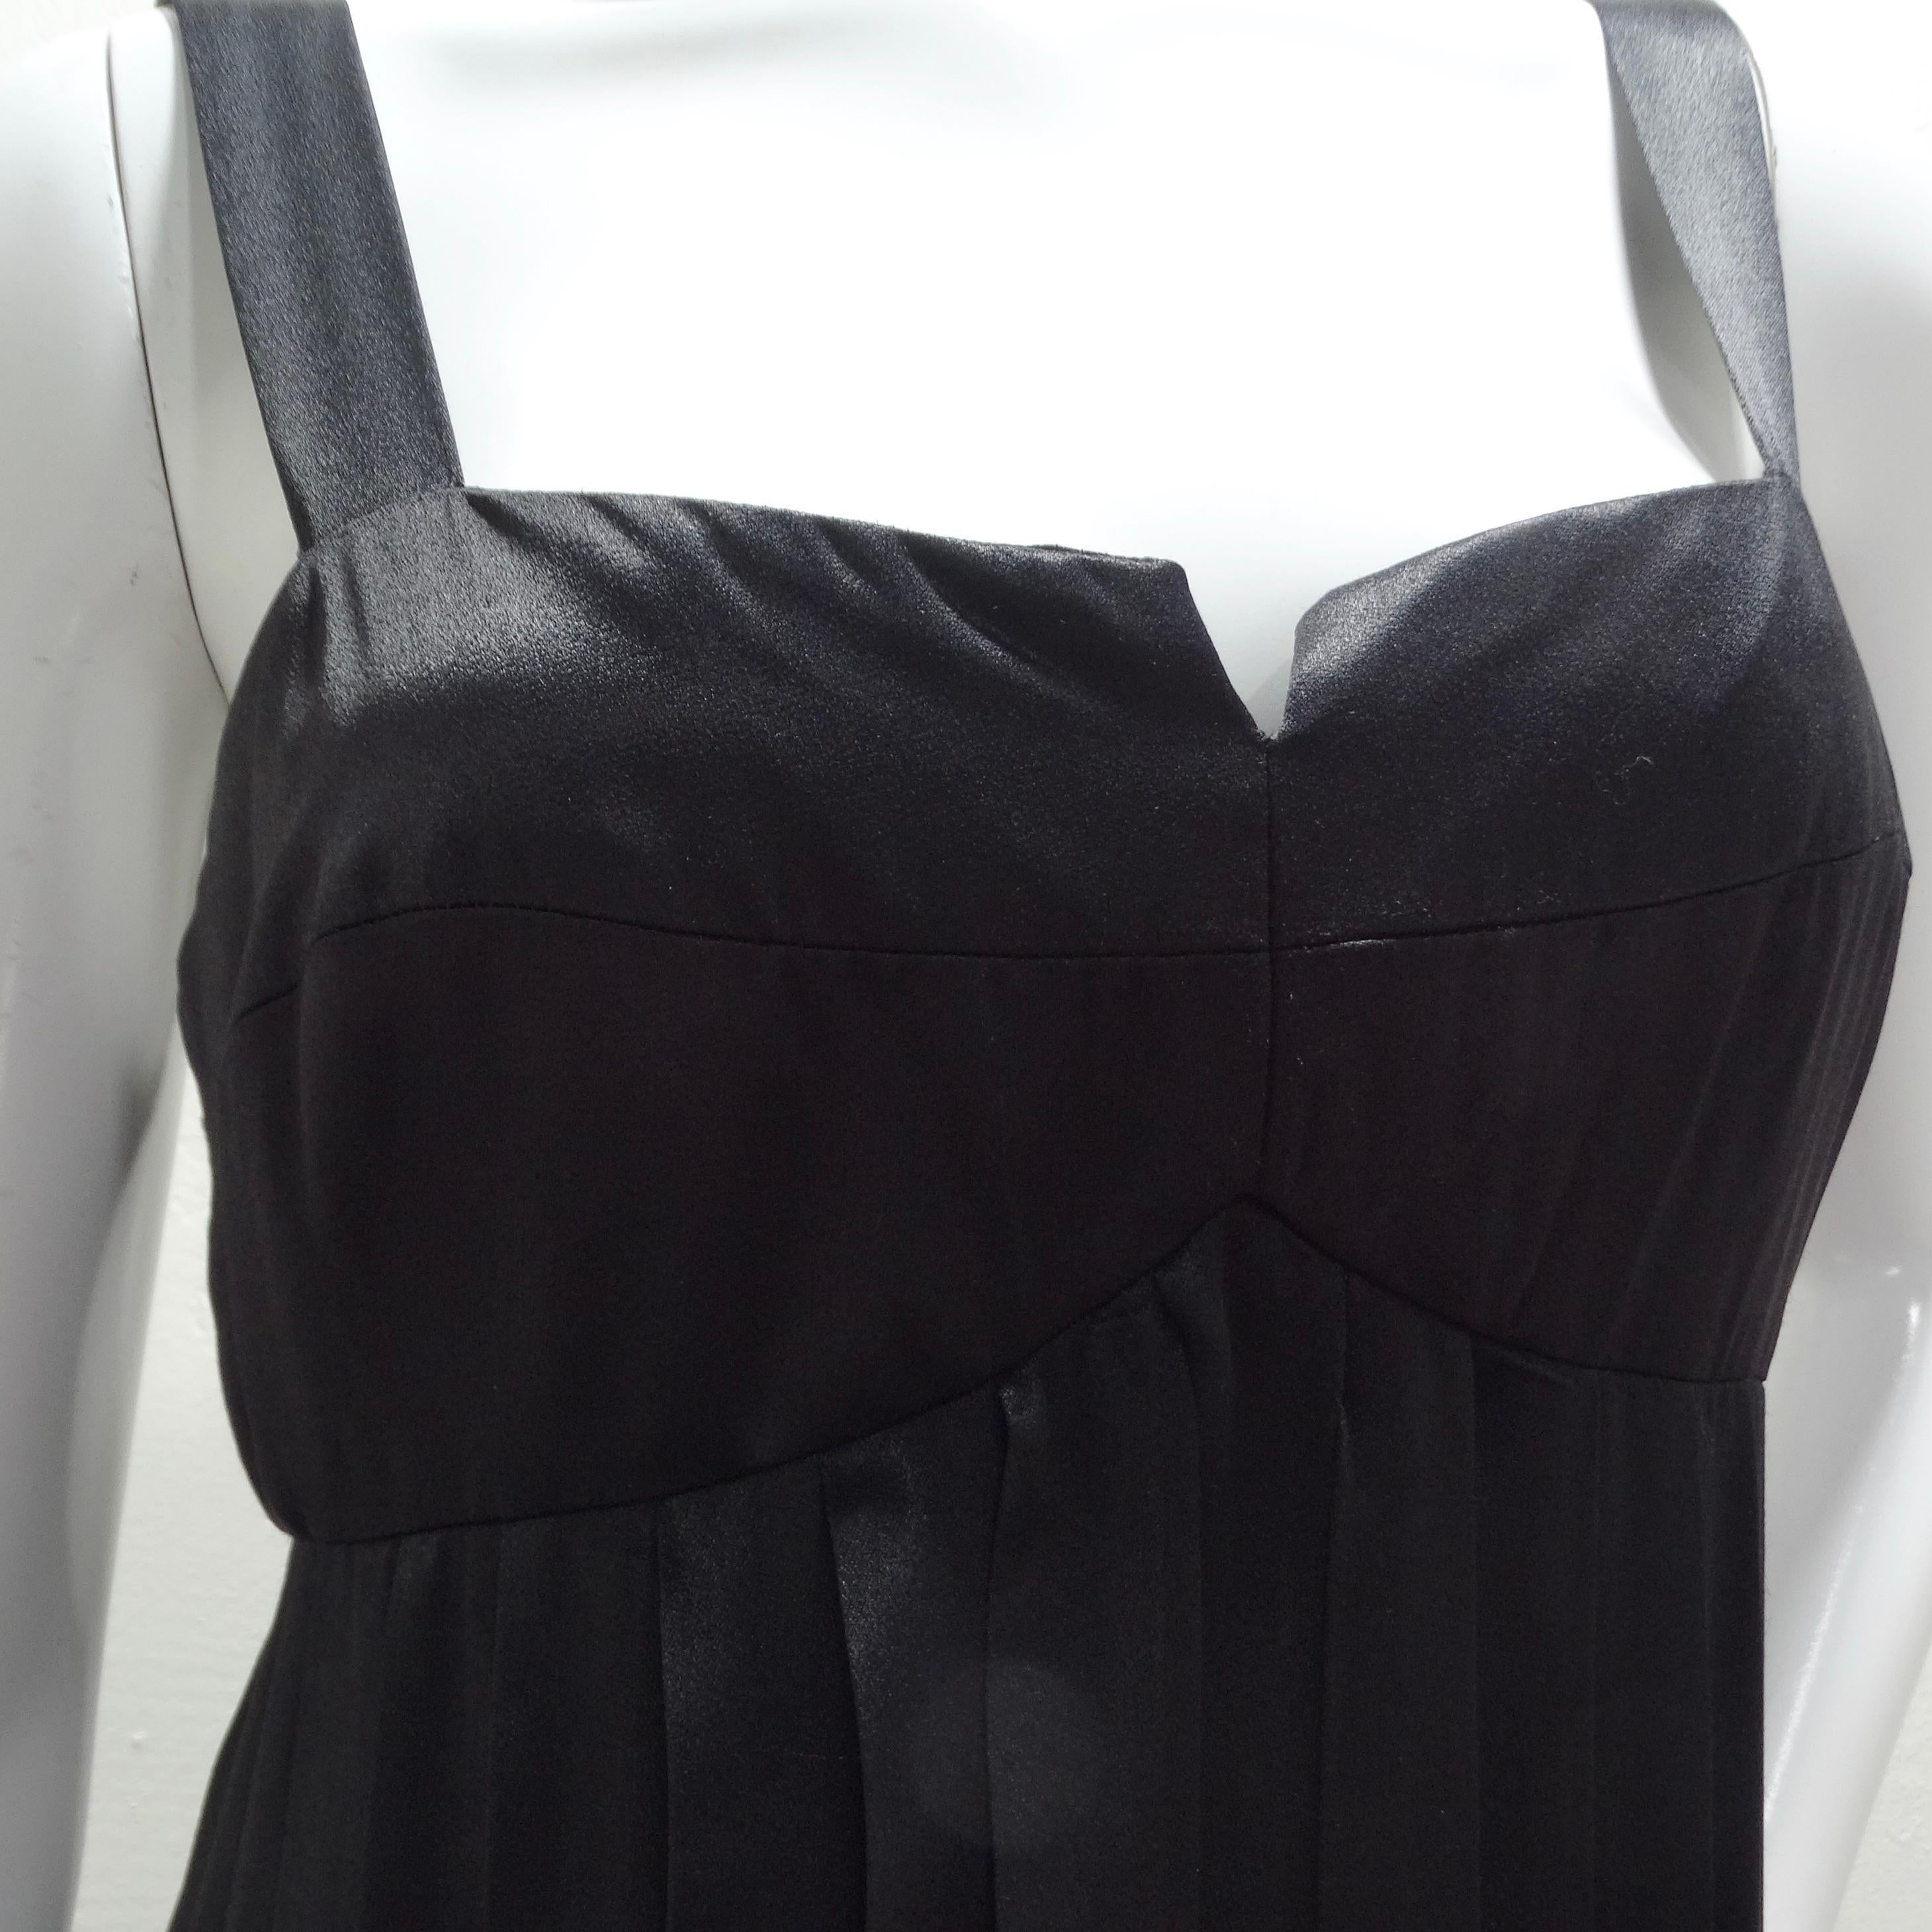 Voici la robe longue Lillie Rubin 1960s Black Carwash, une pièce époustouflante qui respire l'élégance et l'espièglerie à parts égales. Cette robe longue noire est une véritable incarnation du style intemporel, avec un corsage structuré de type